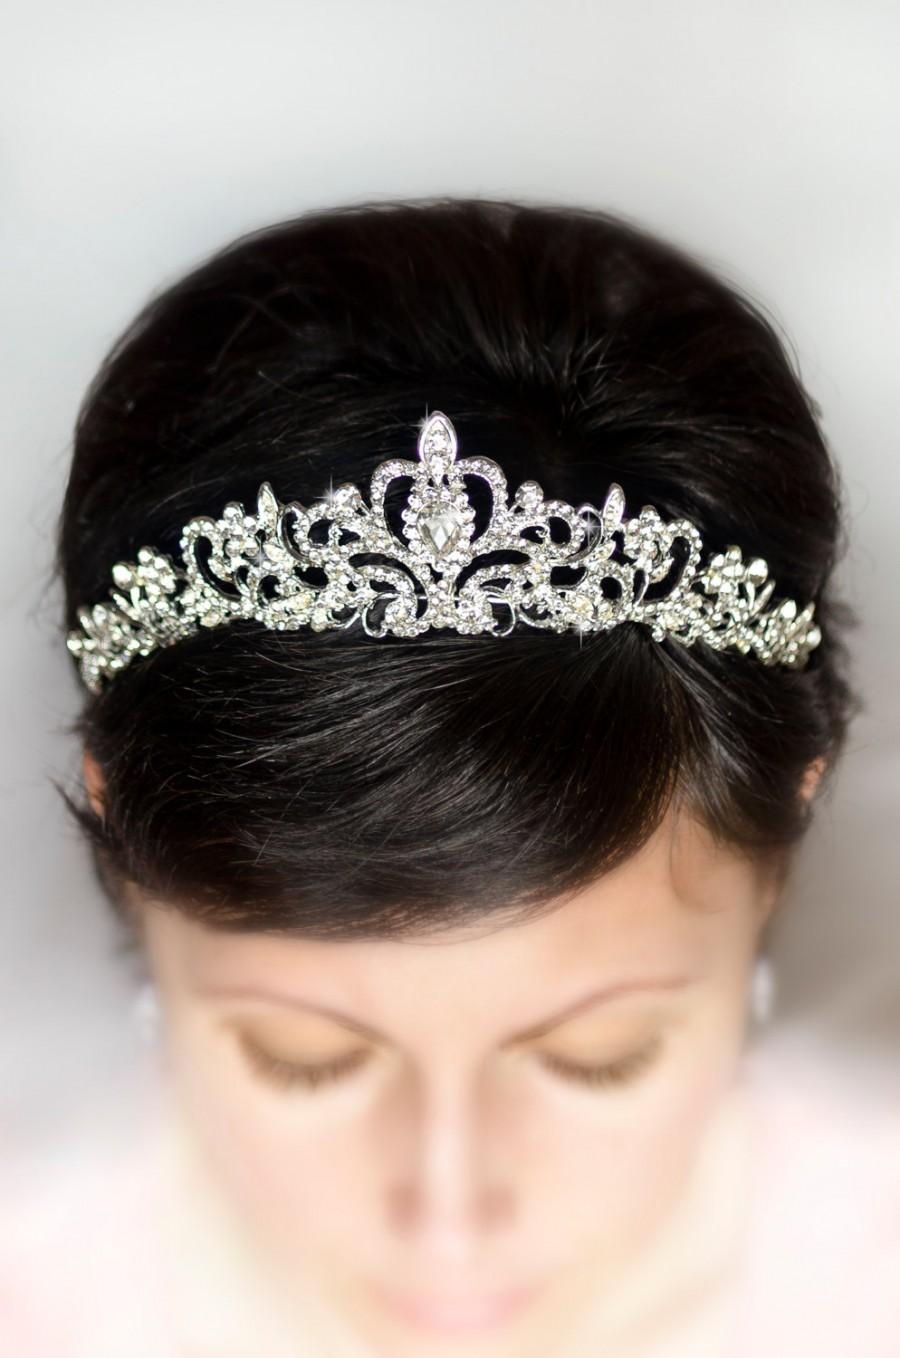 Wedding - Bridal tiara, bridal hairpiece, wedding tiara, rhinestone tiara, rhinestone crown, wedding crown, crystal headband, bridal hair piece, bride